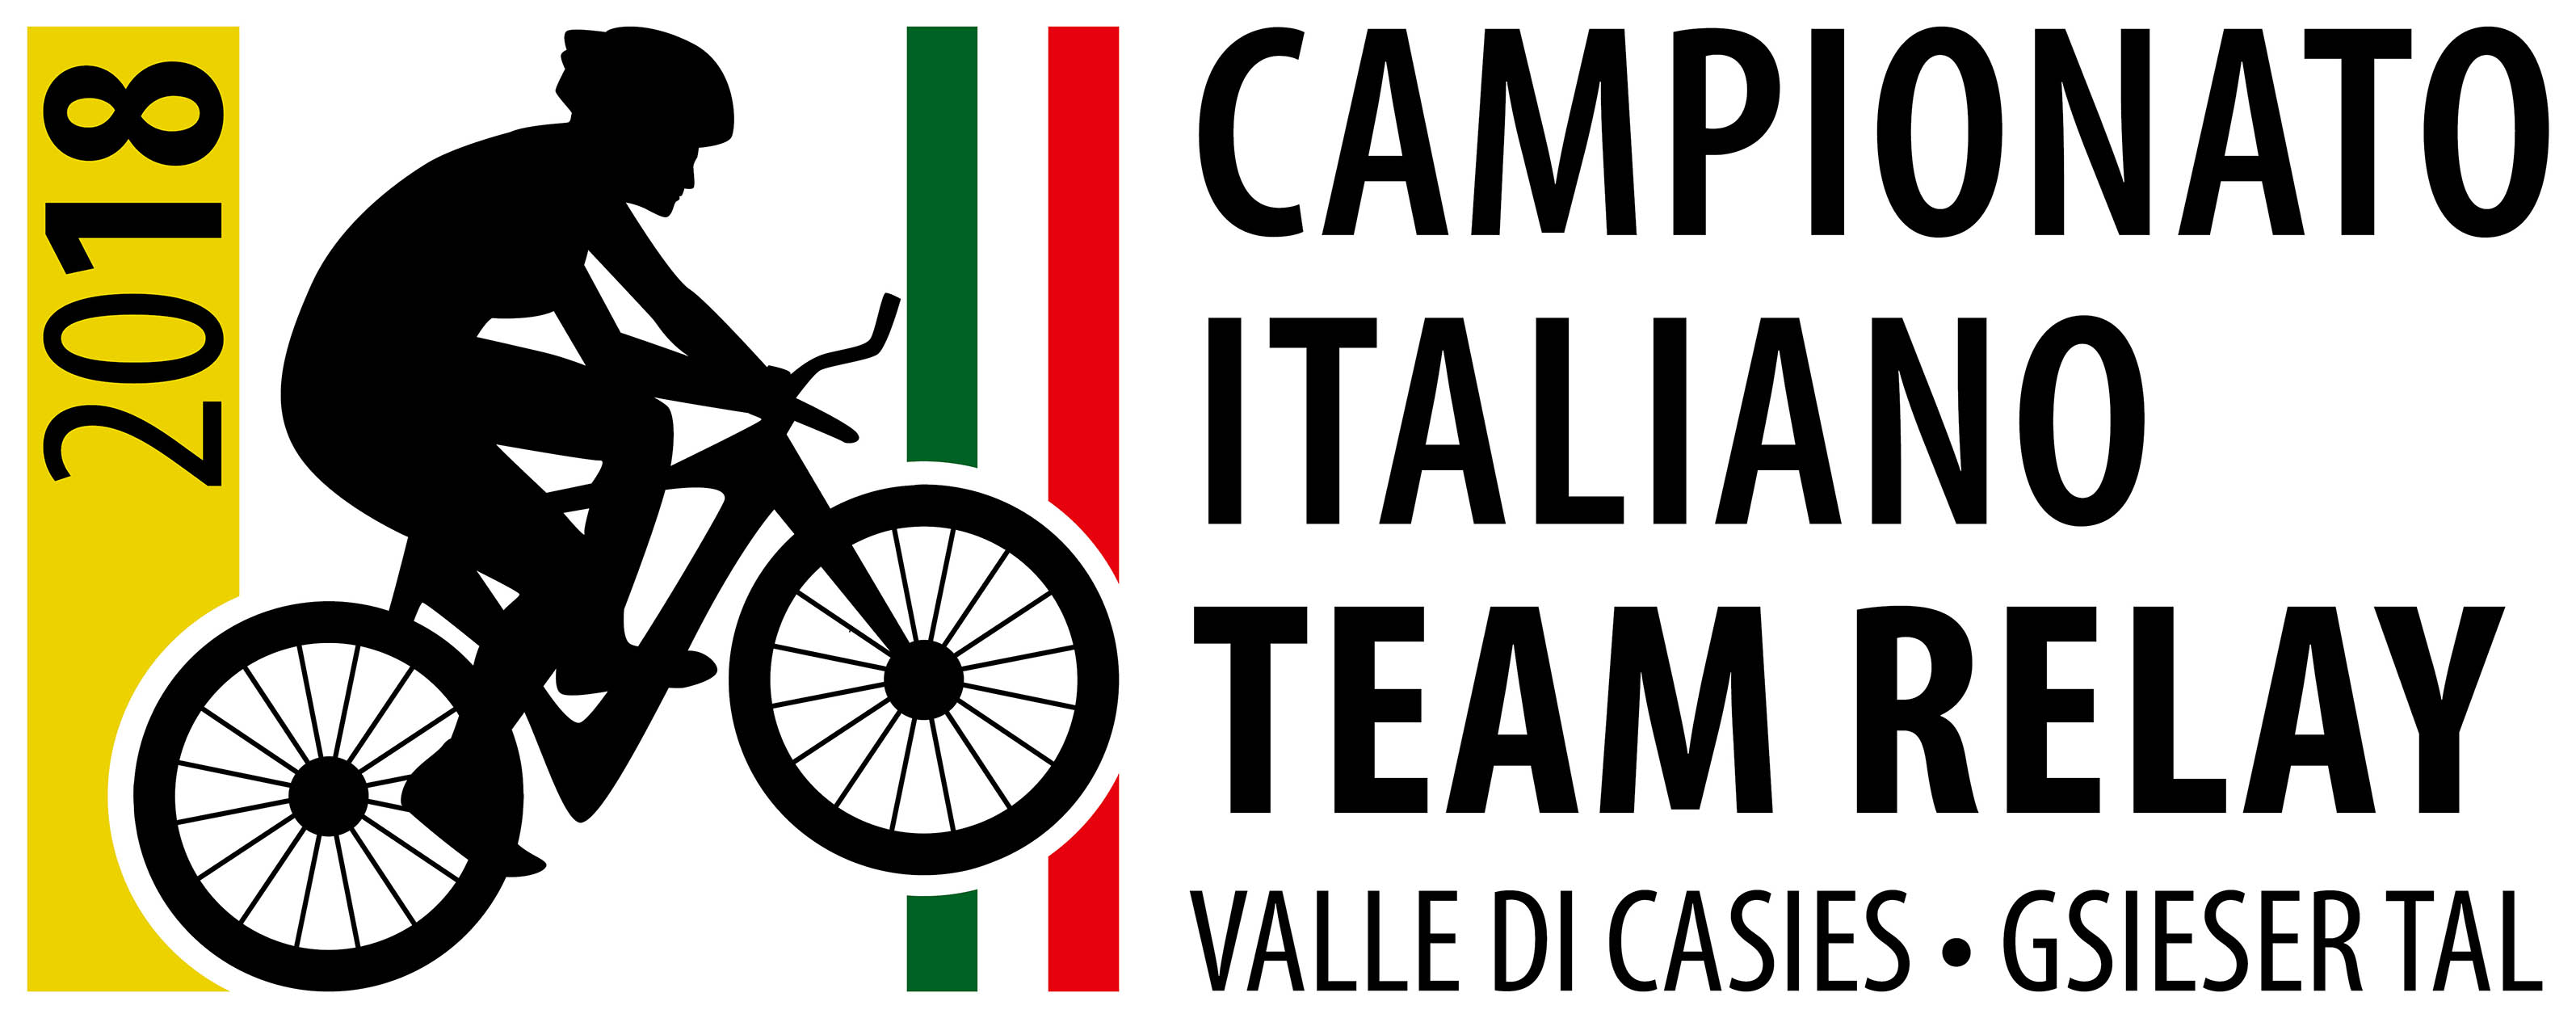 GIOVANI ALLA RISCOSSA IN VAL CASIES (BZ). CAMPIONATO ITALIANO TEAM RELAY E COPPA ITALIA